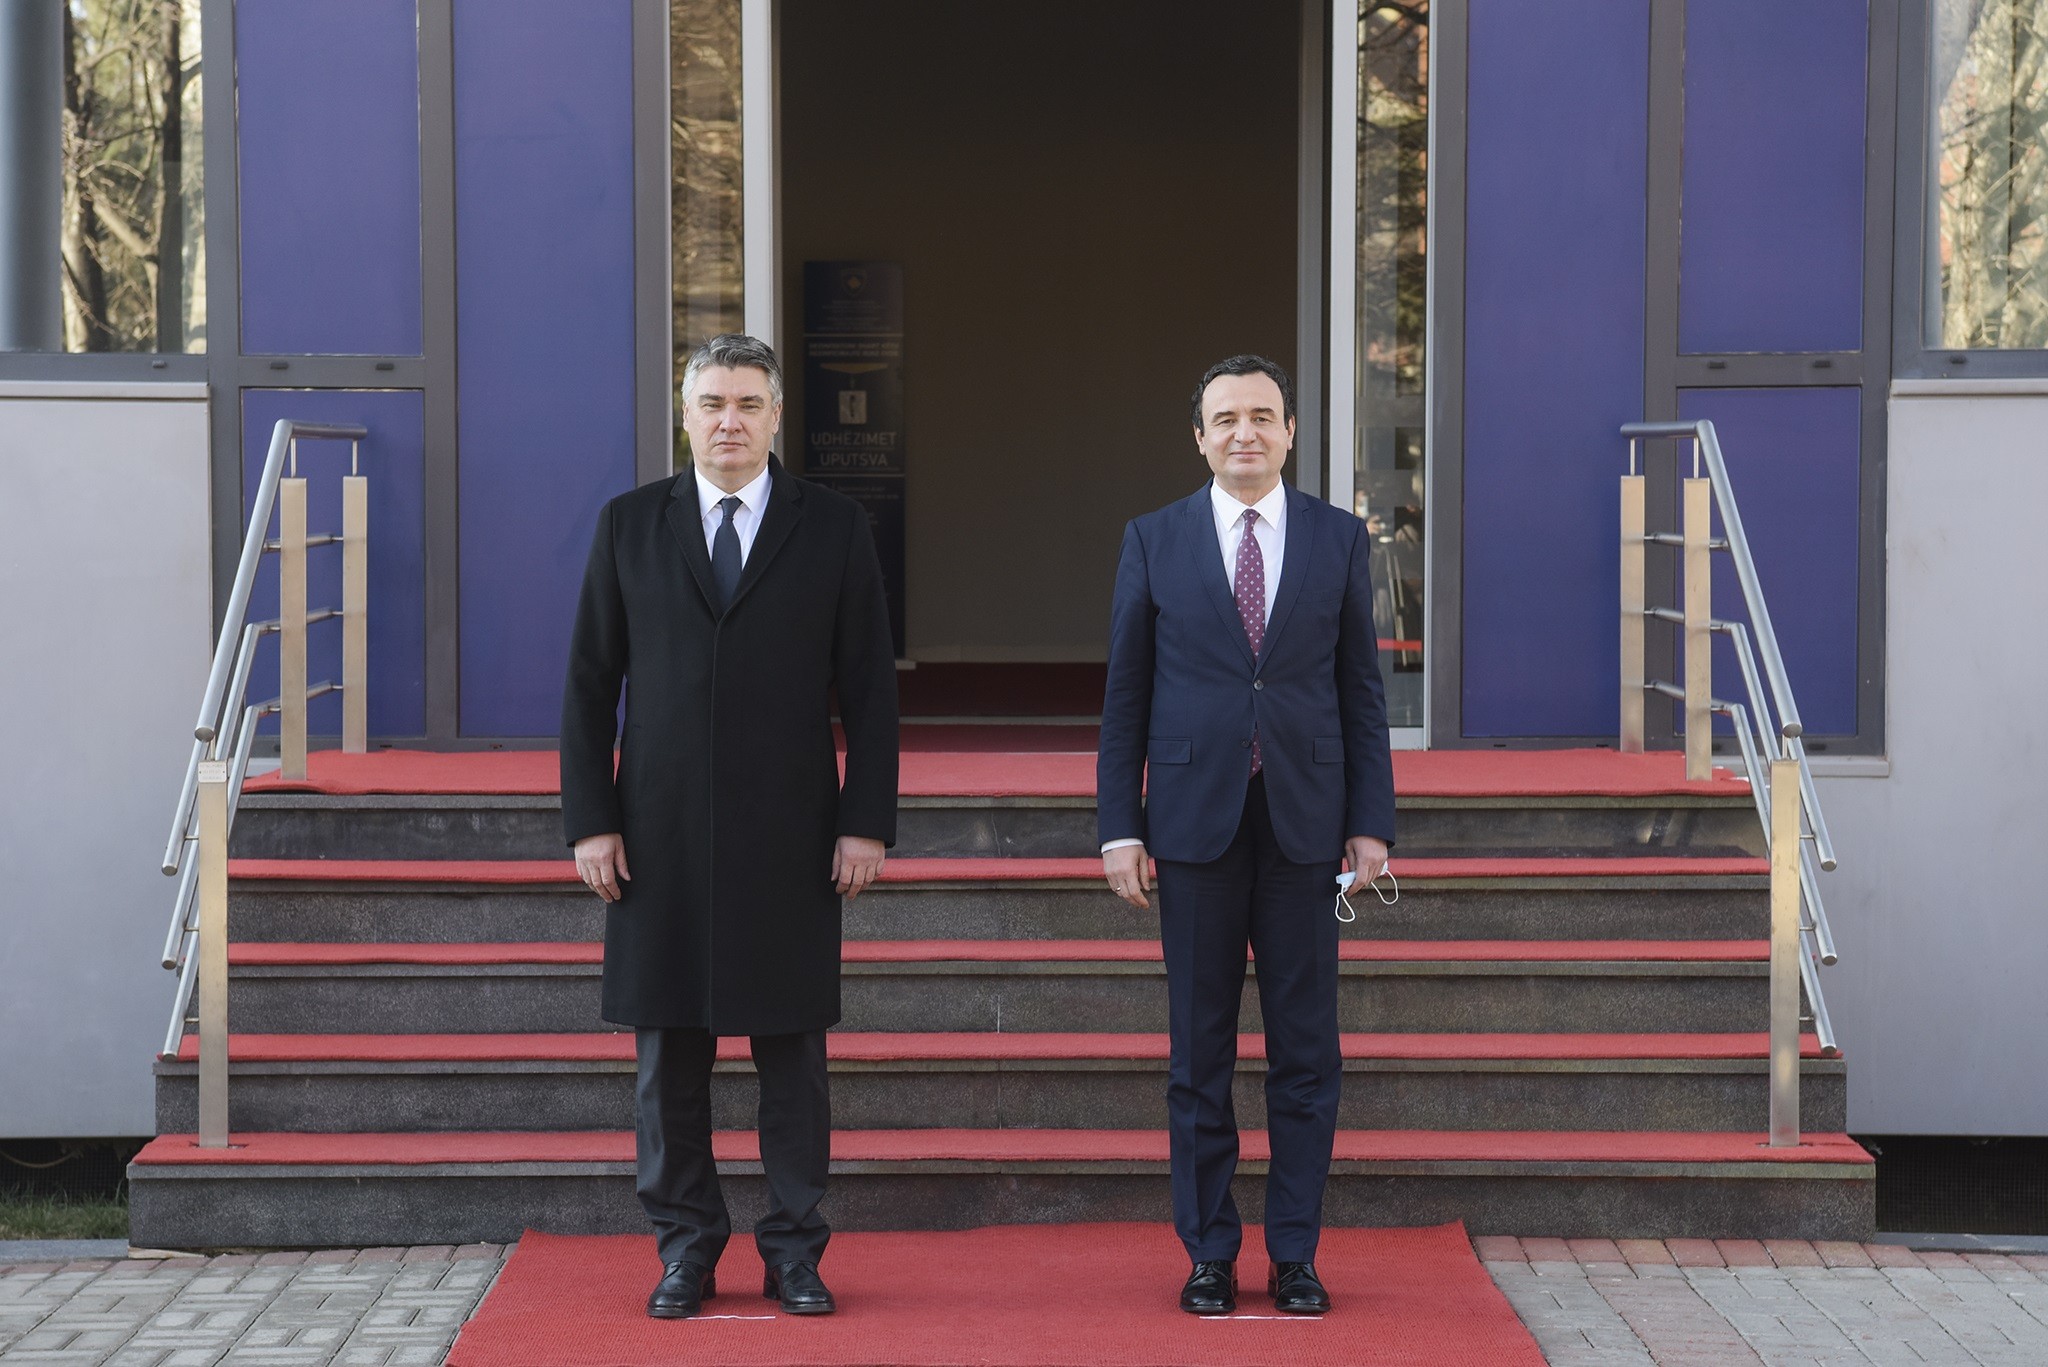 Presidenti Milanoviq impresionohet me rritjen ekonomike të Kosovës